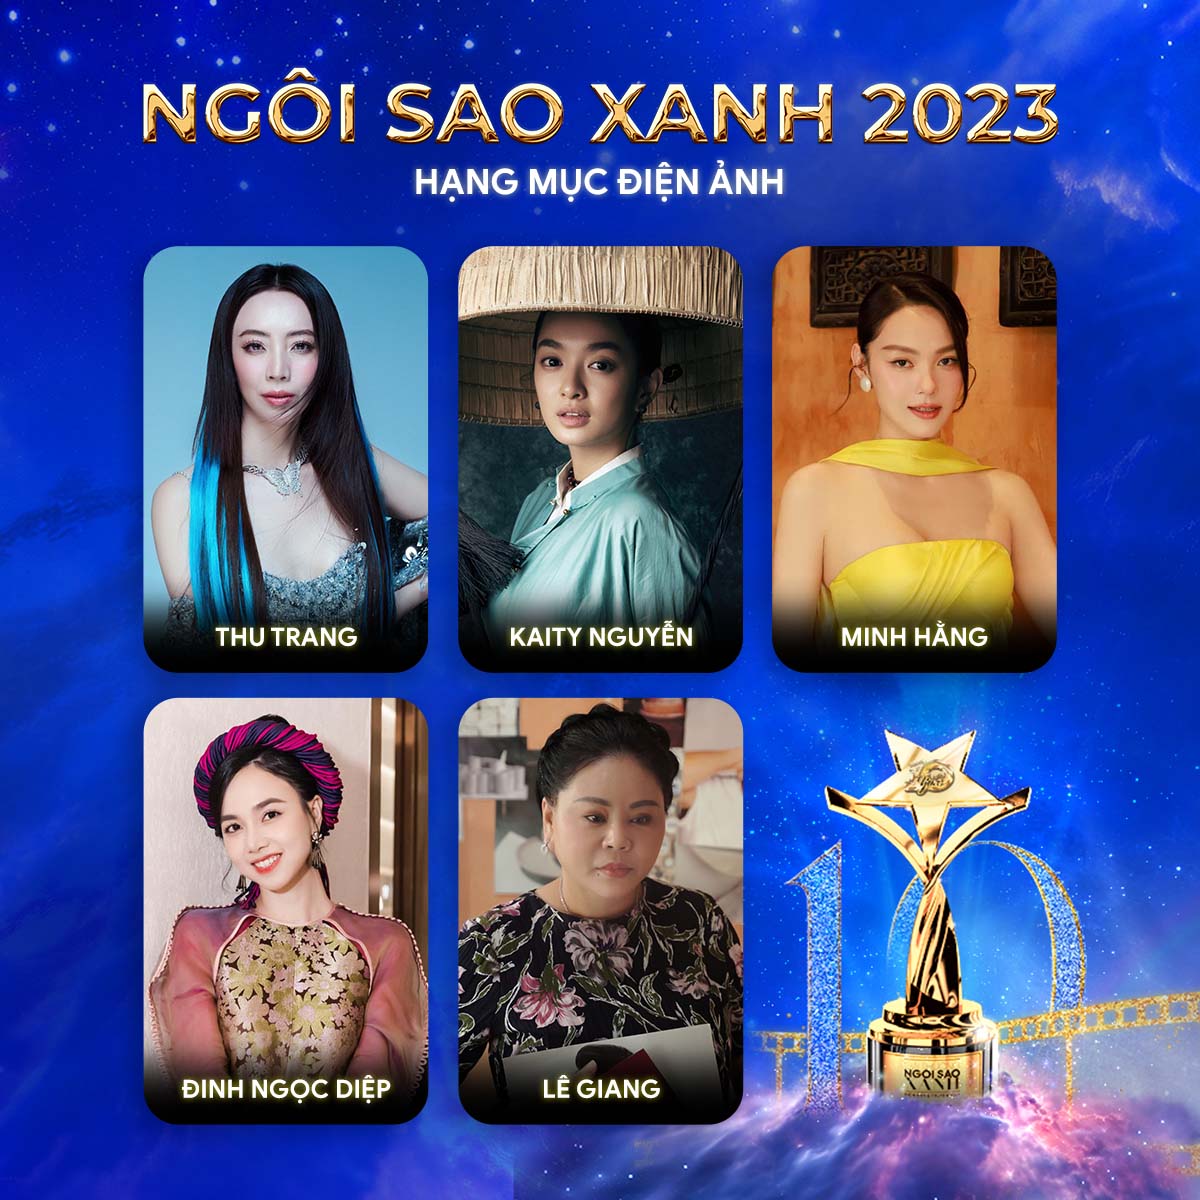 Hoa hậu Tiểu Vy, Trương Quỳnh Anh xuất hiện lộng lẫy tại buổi công bố giải thưởng Ngôi Sao Xanh 2023 - Ảnh 7.